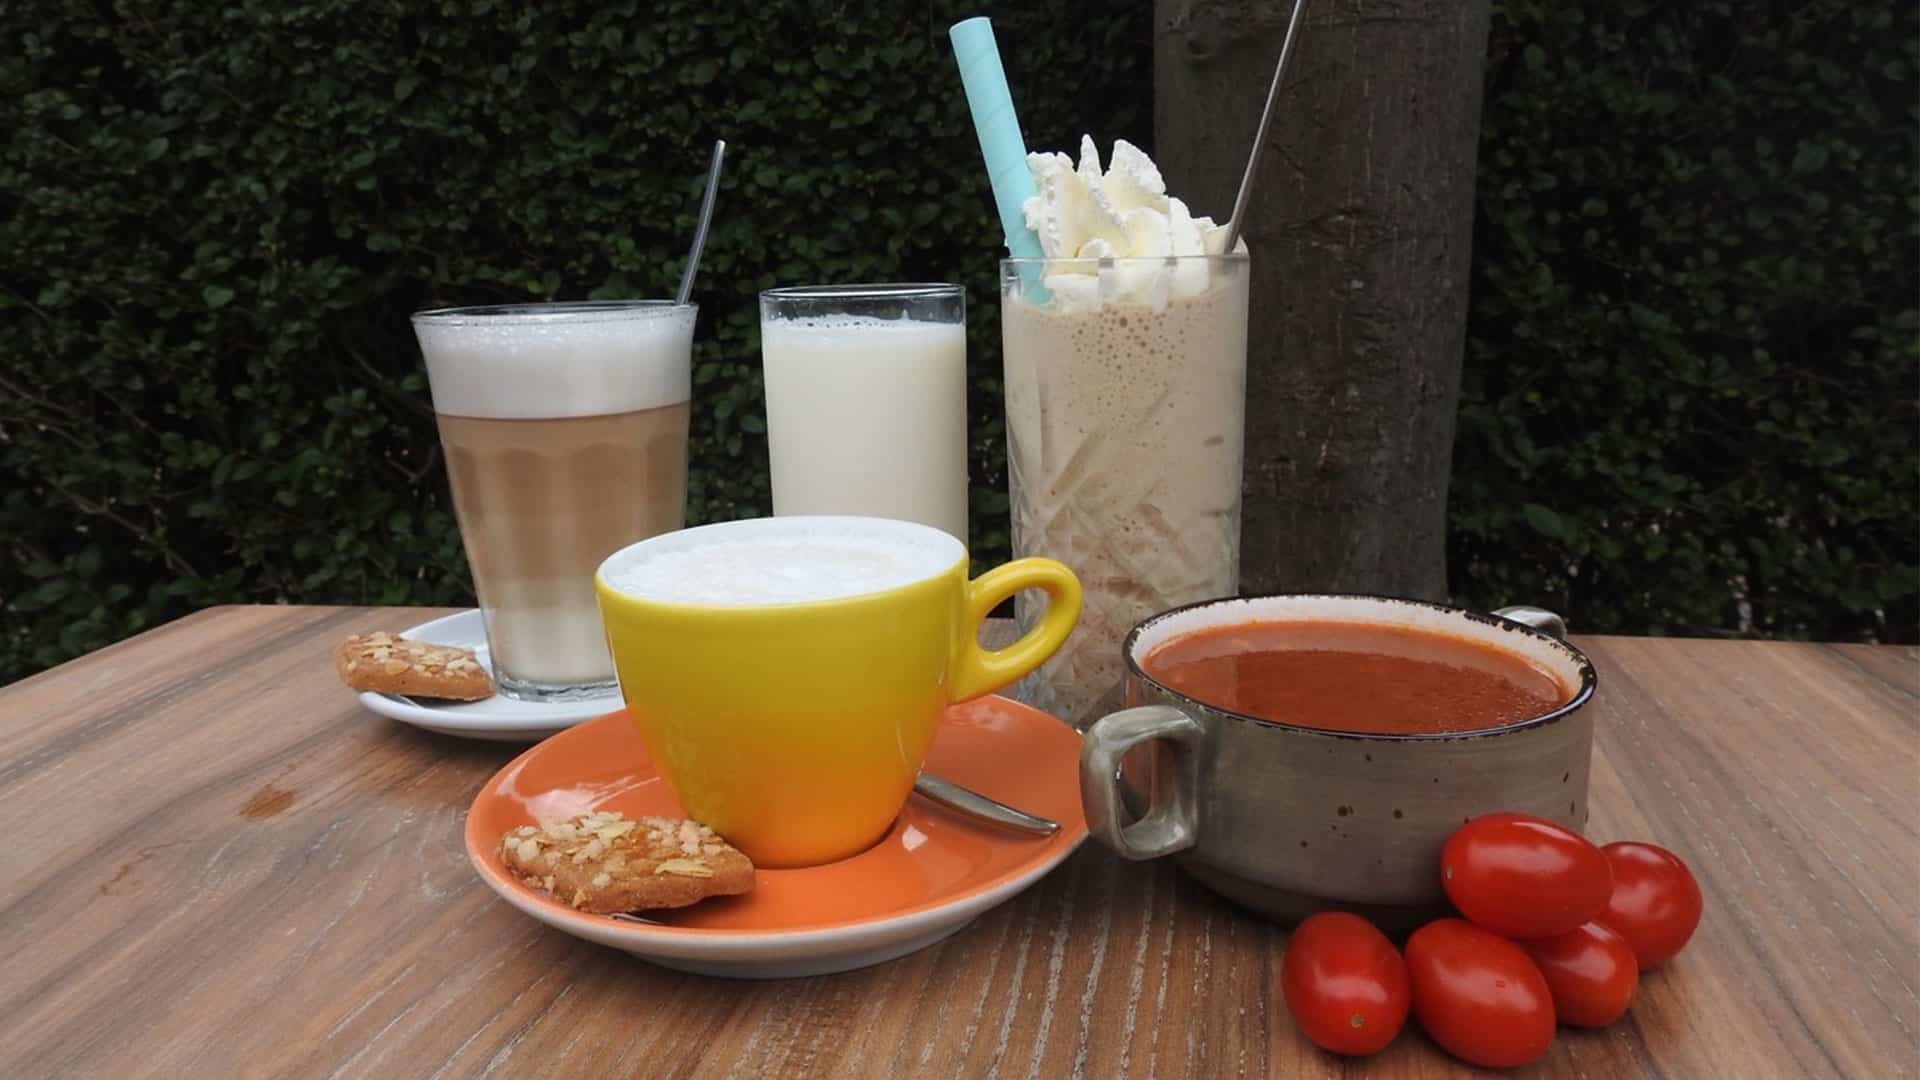 Robin van Vliet van koffiehuis de Hooiberg in Midden-Delfland koffies en tomatensoep op tafel met streekproducten uit Midden-Delfland